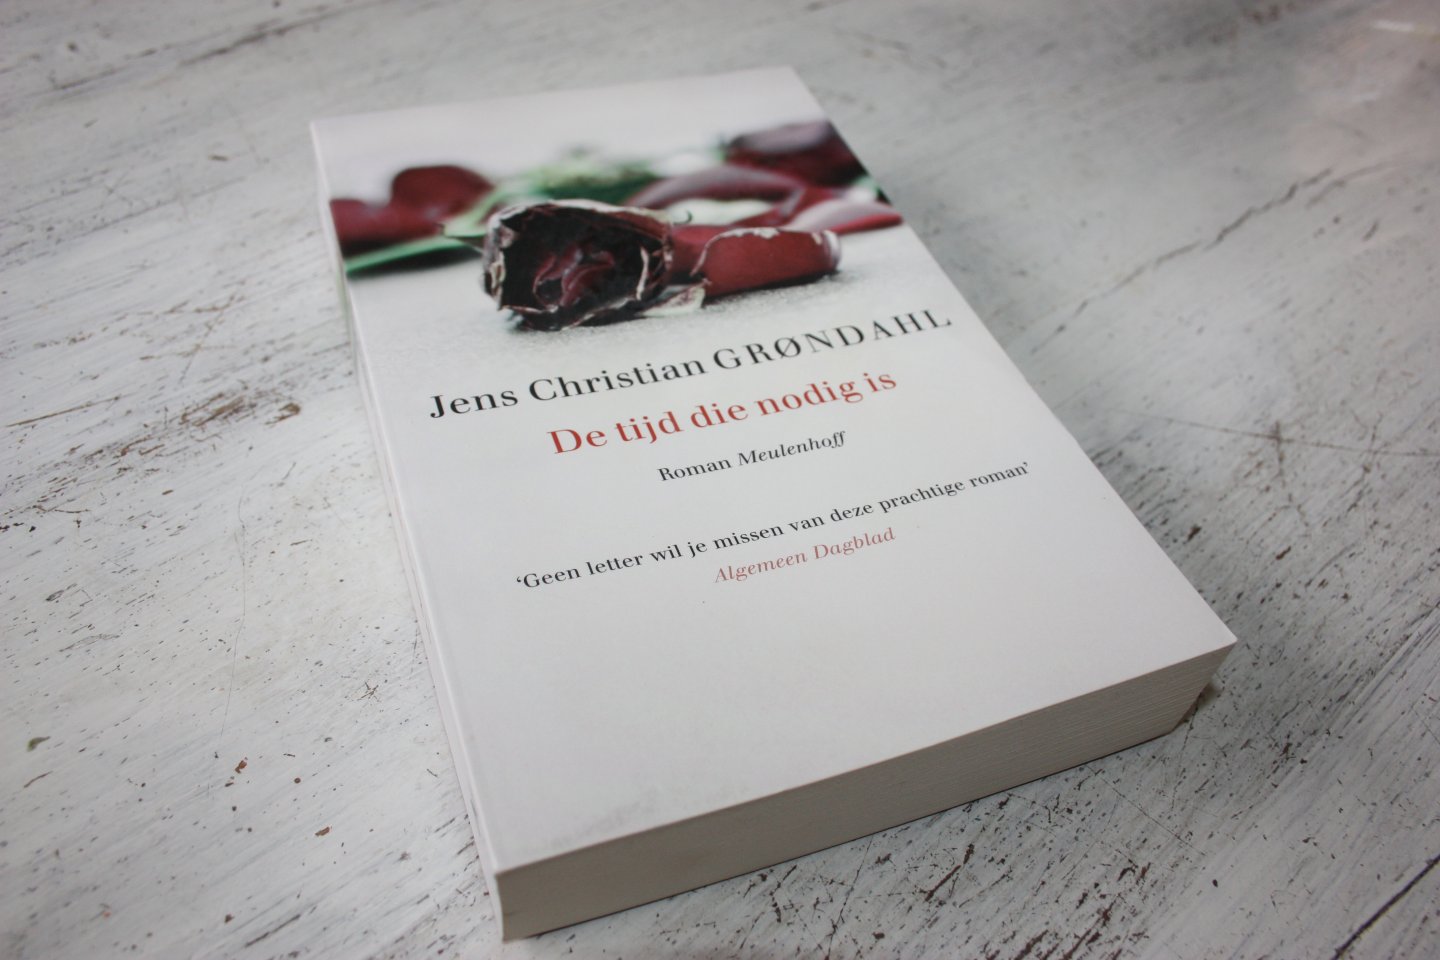 Grøndahl, Jens Christian - De tijd die nodig is